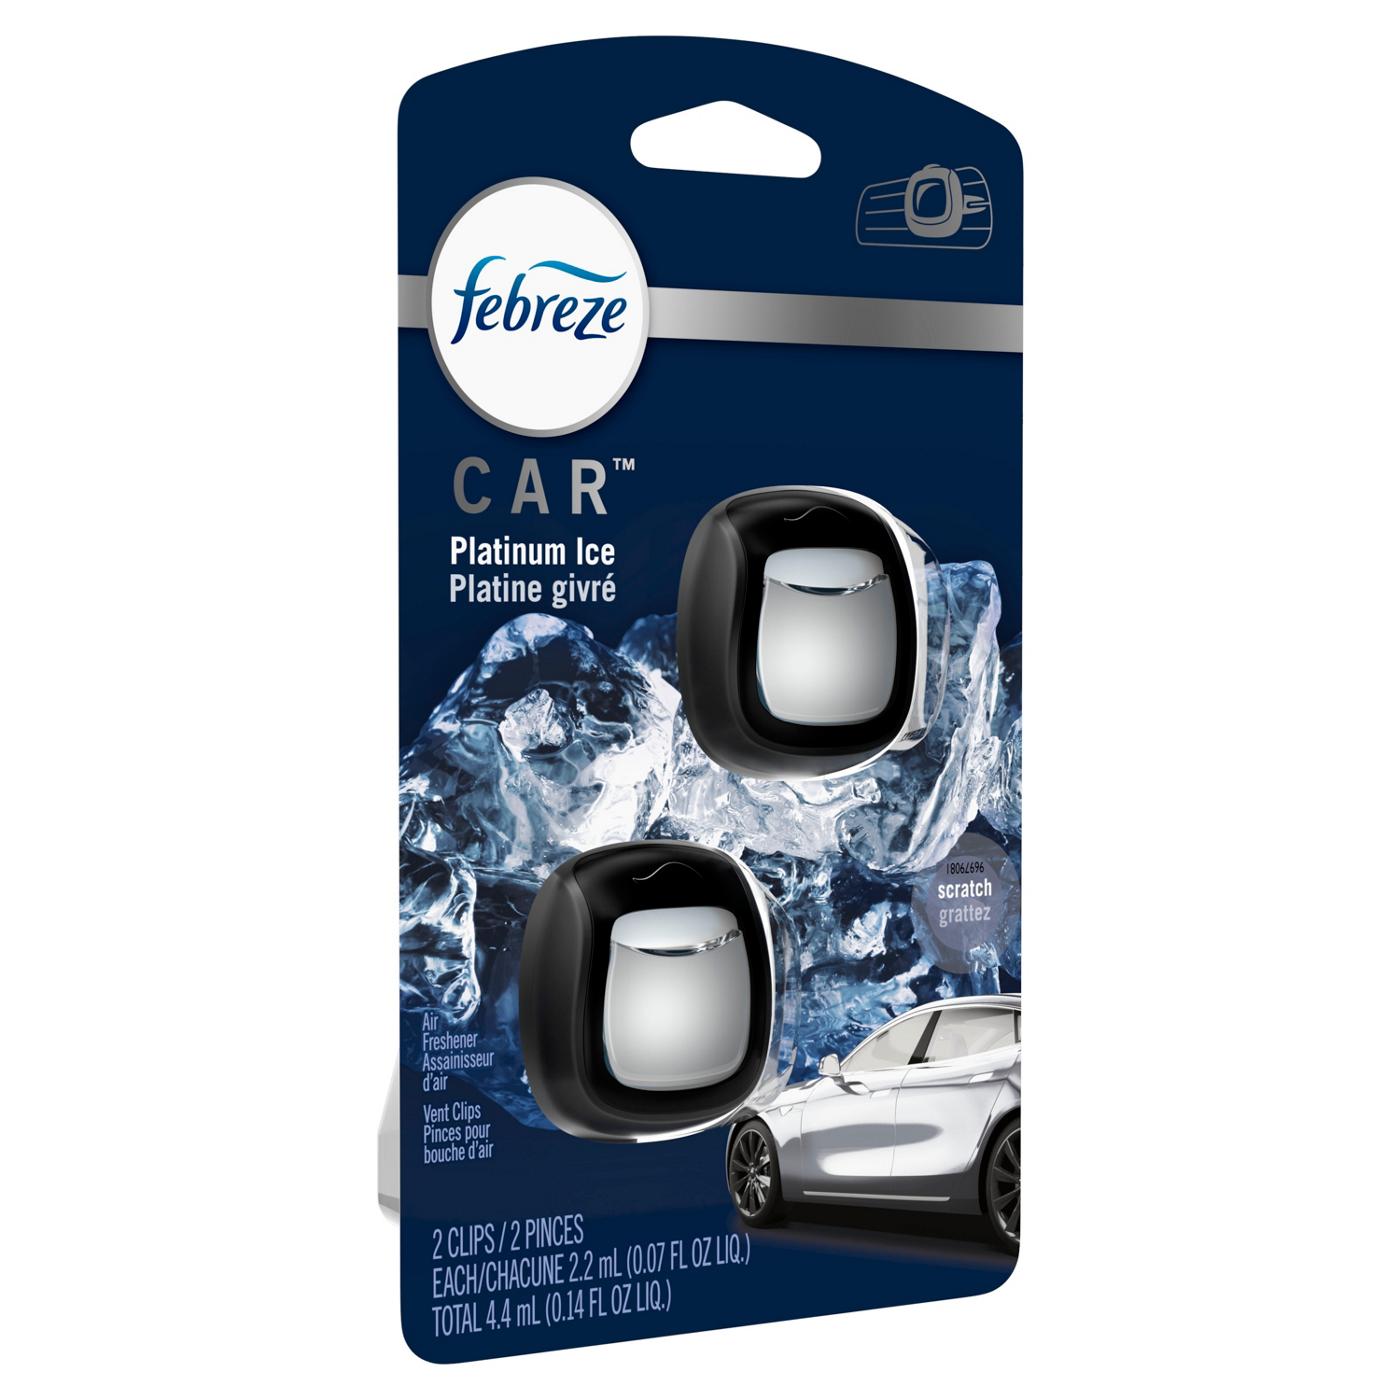 Febreze Car Air Freshener, Ocean - 2.2 ml